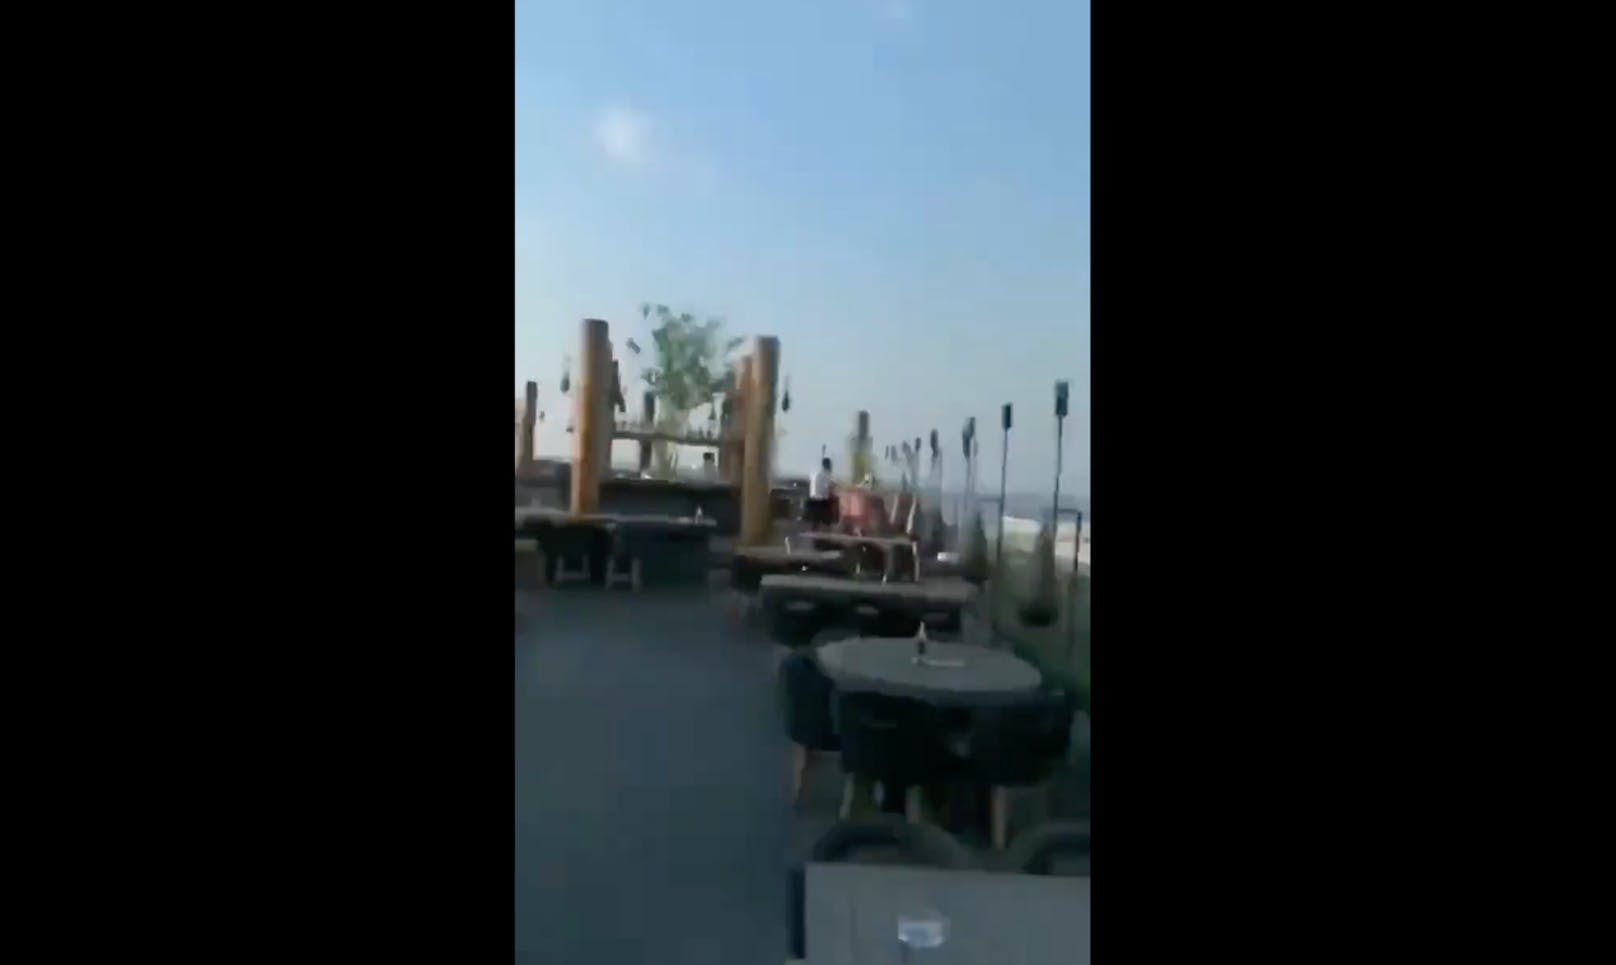 Diese Terrasse sieht man in dem Video, das derzeit fälschlicherweise mit dem Erdbeben im türkisch-syrischen Grenzgebiet in Zusammenhang gebracht wird.